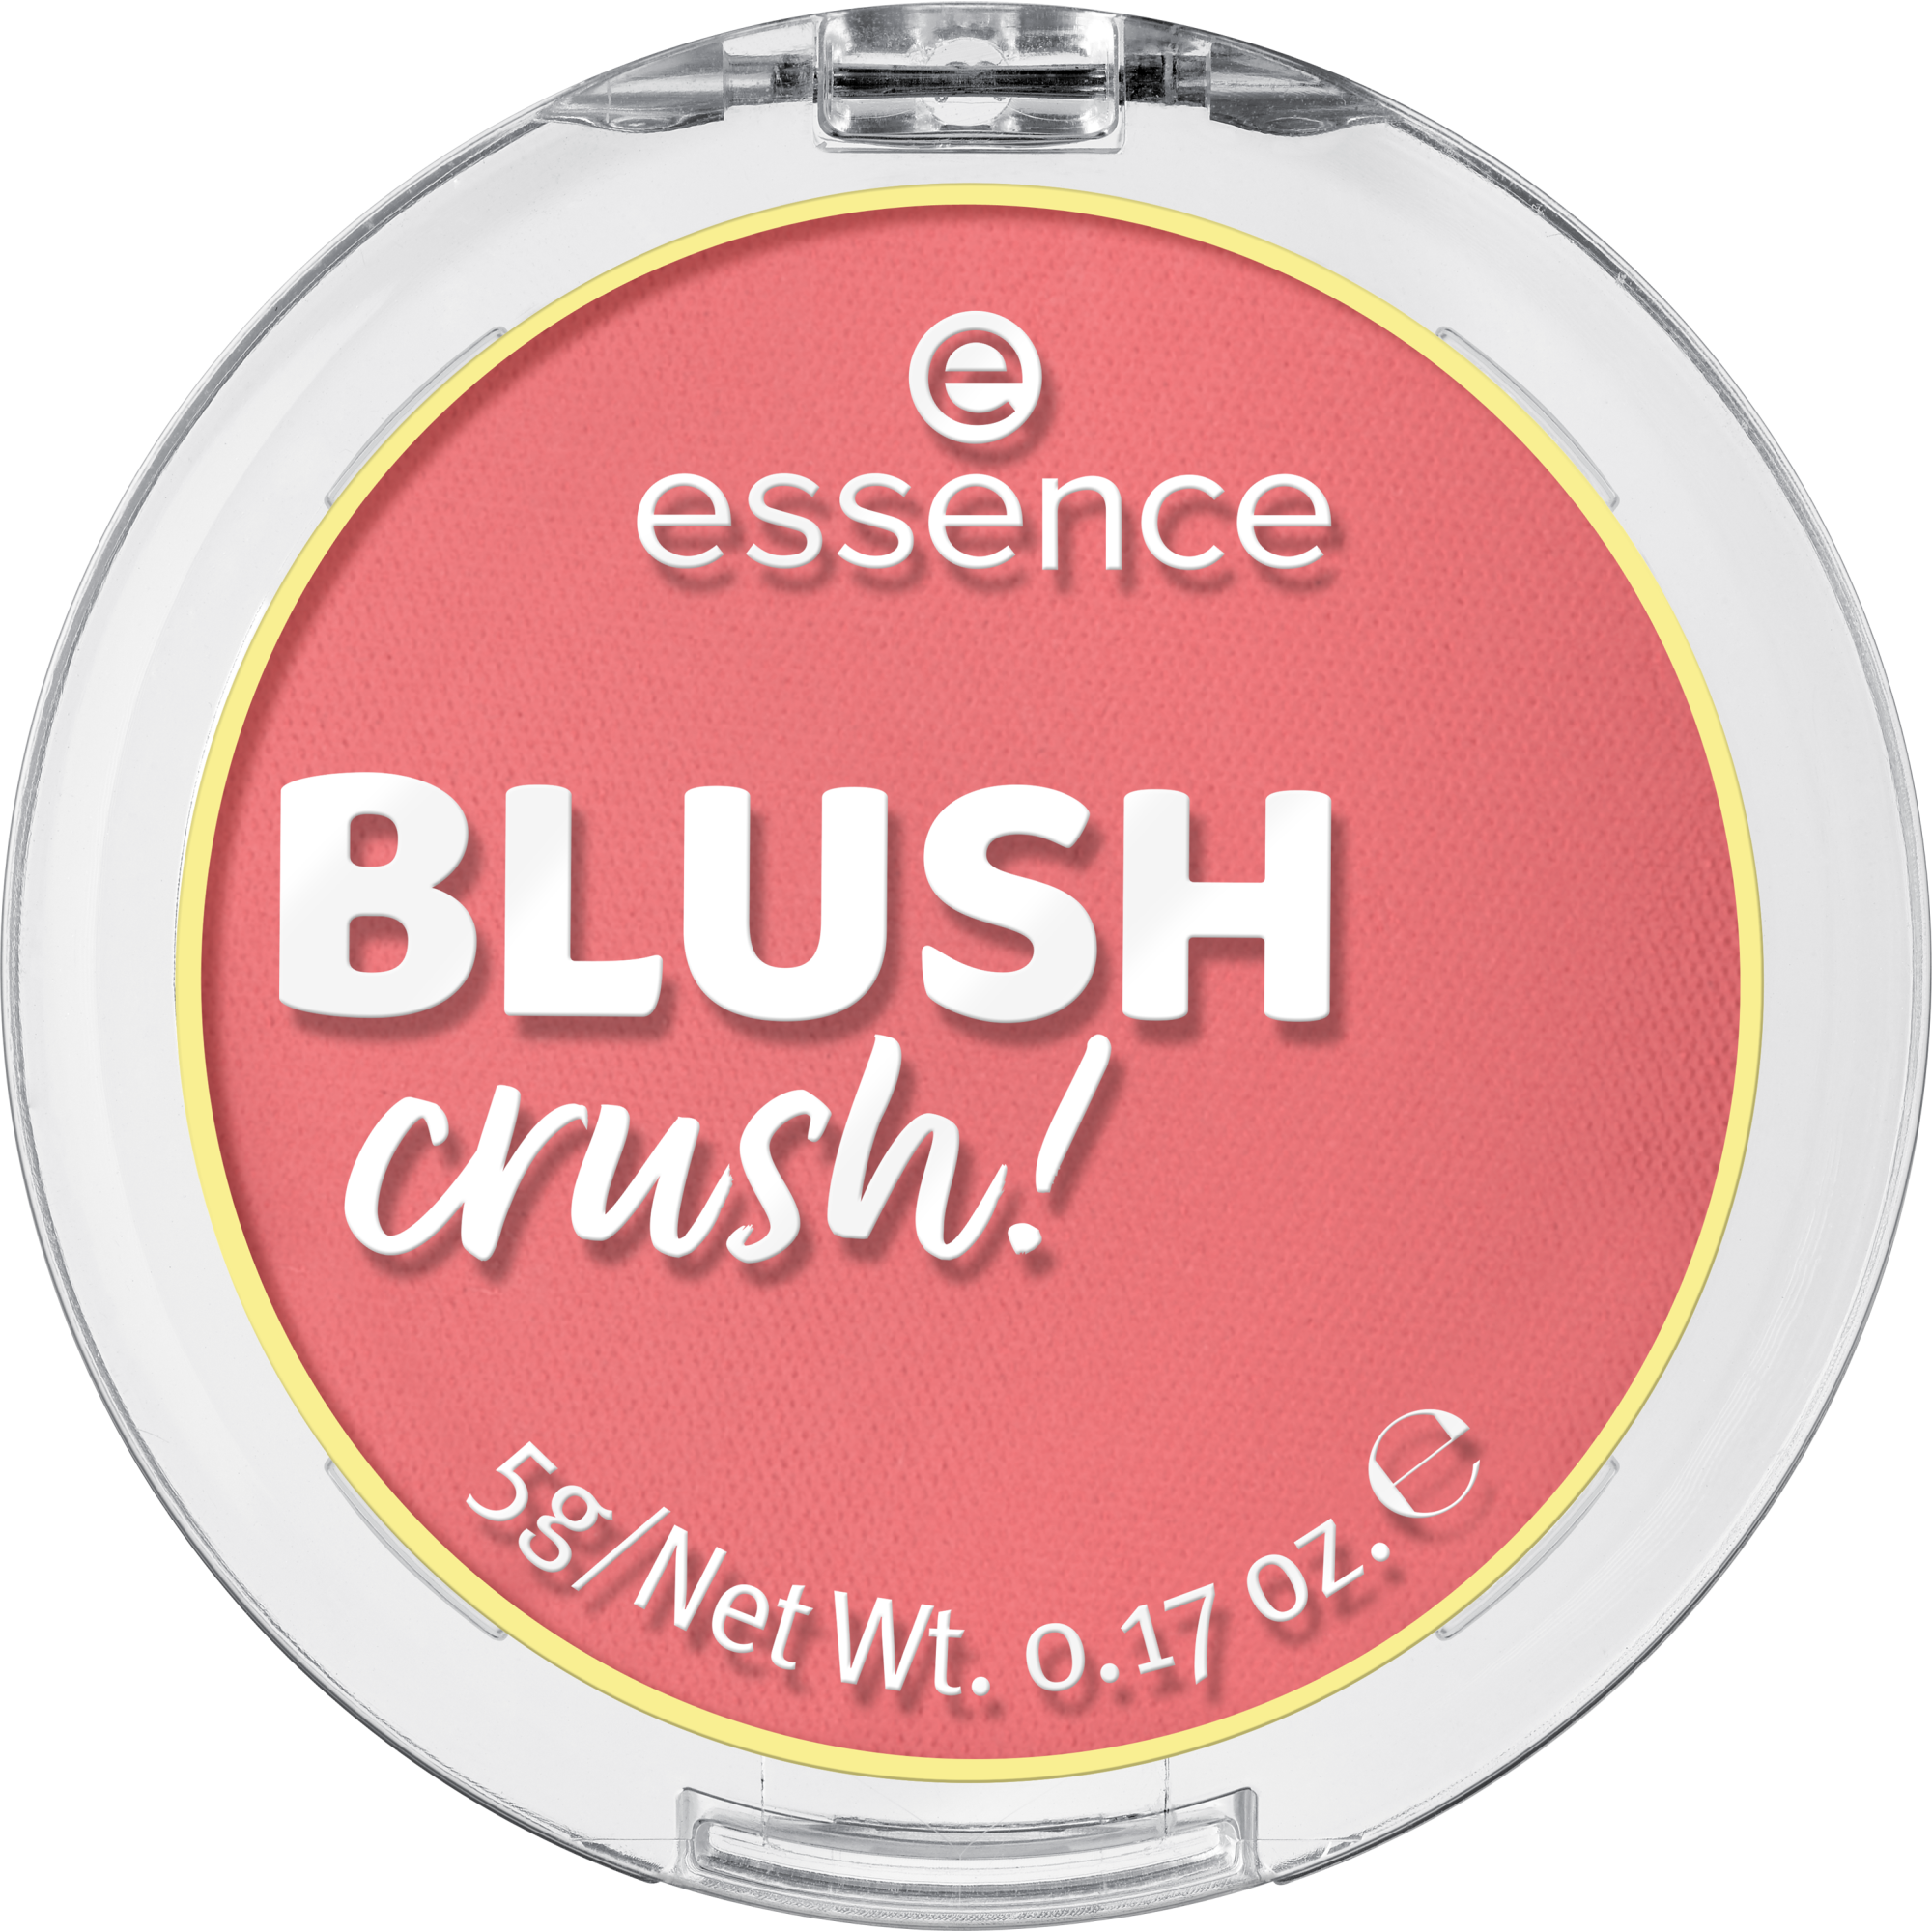 BLUSH crush!